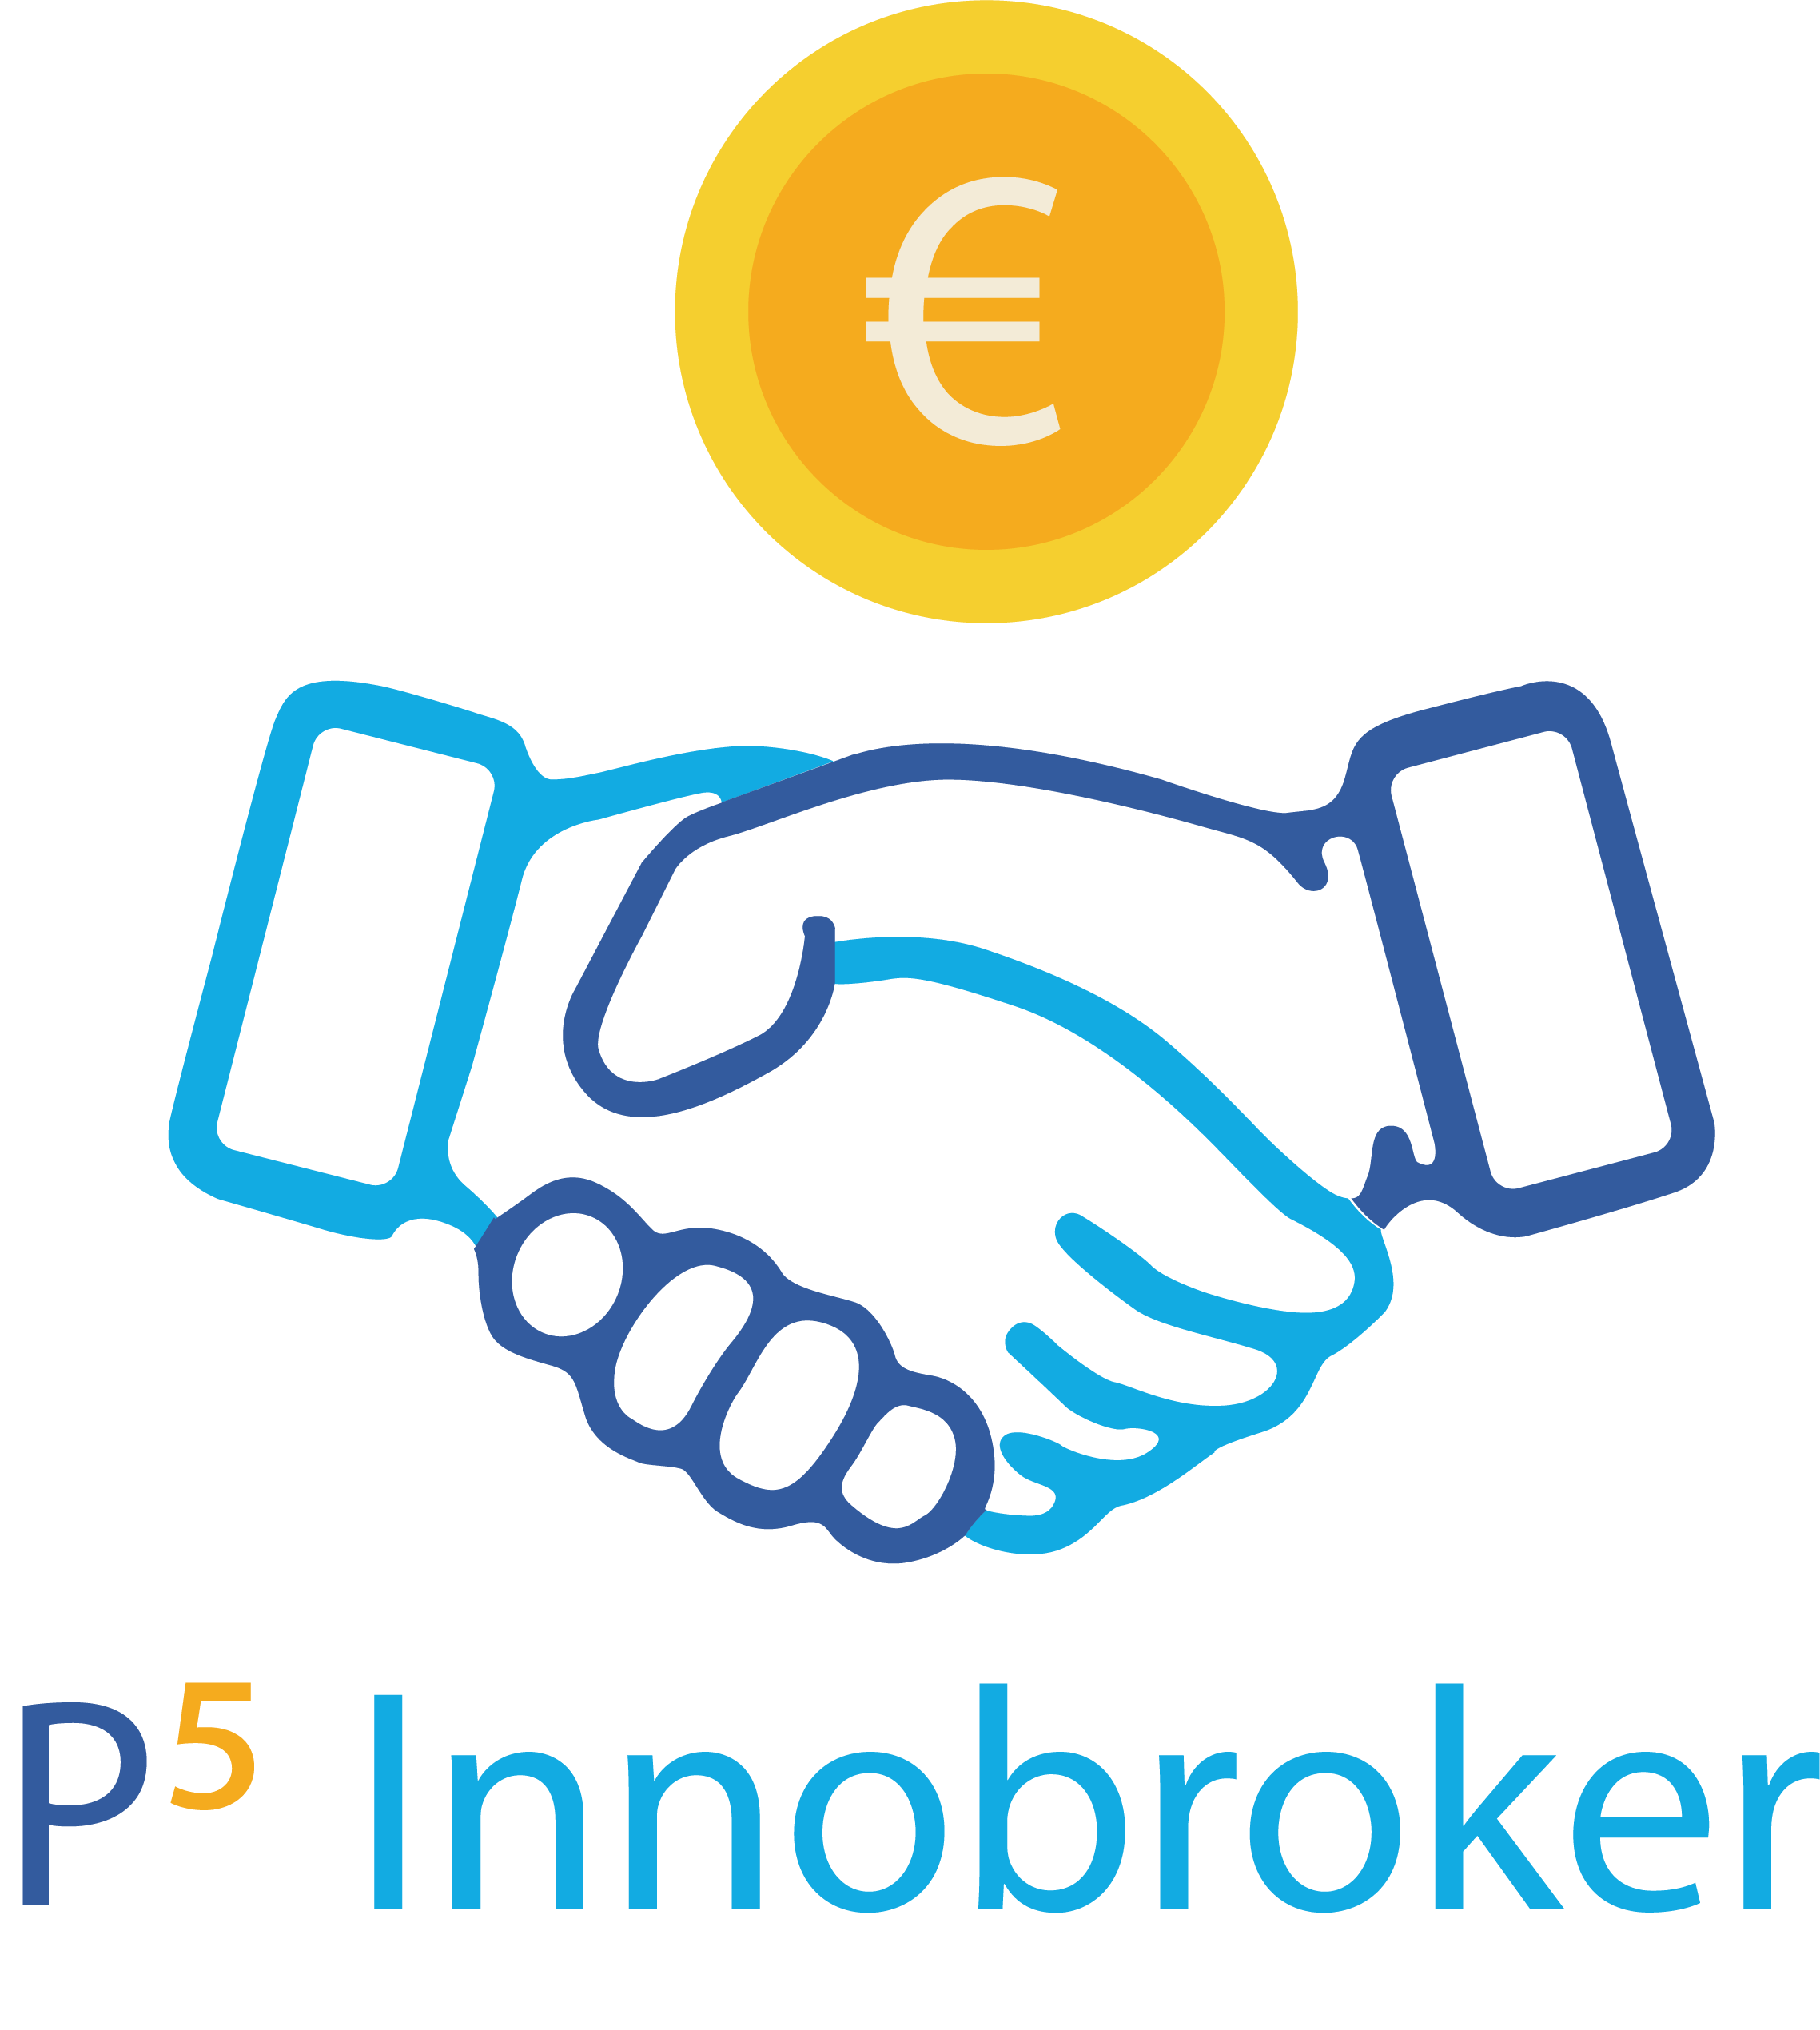 [P5 Innobroker] Formation “Droits de propriété intellectuelle et achat public innovant”